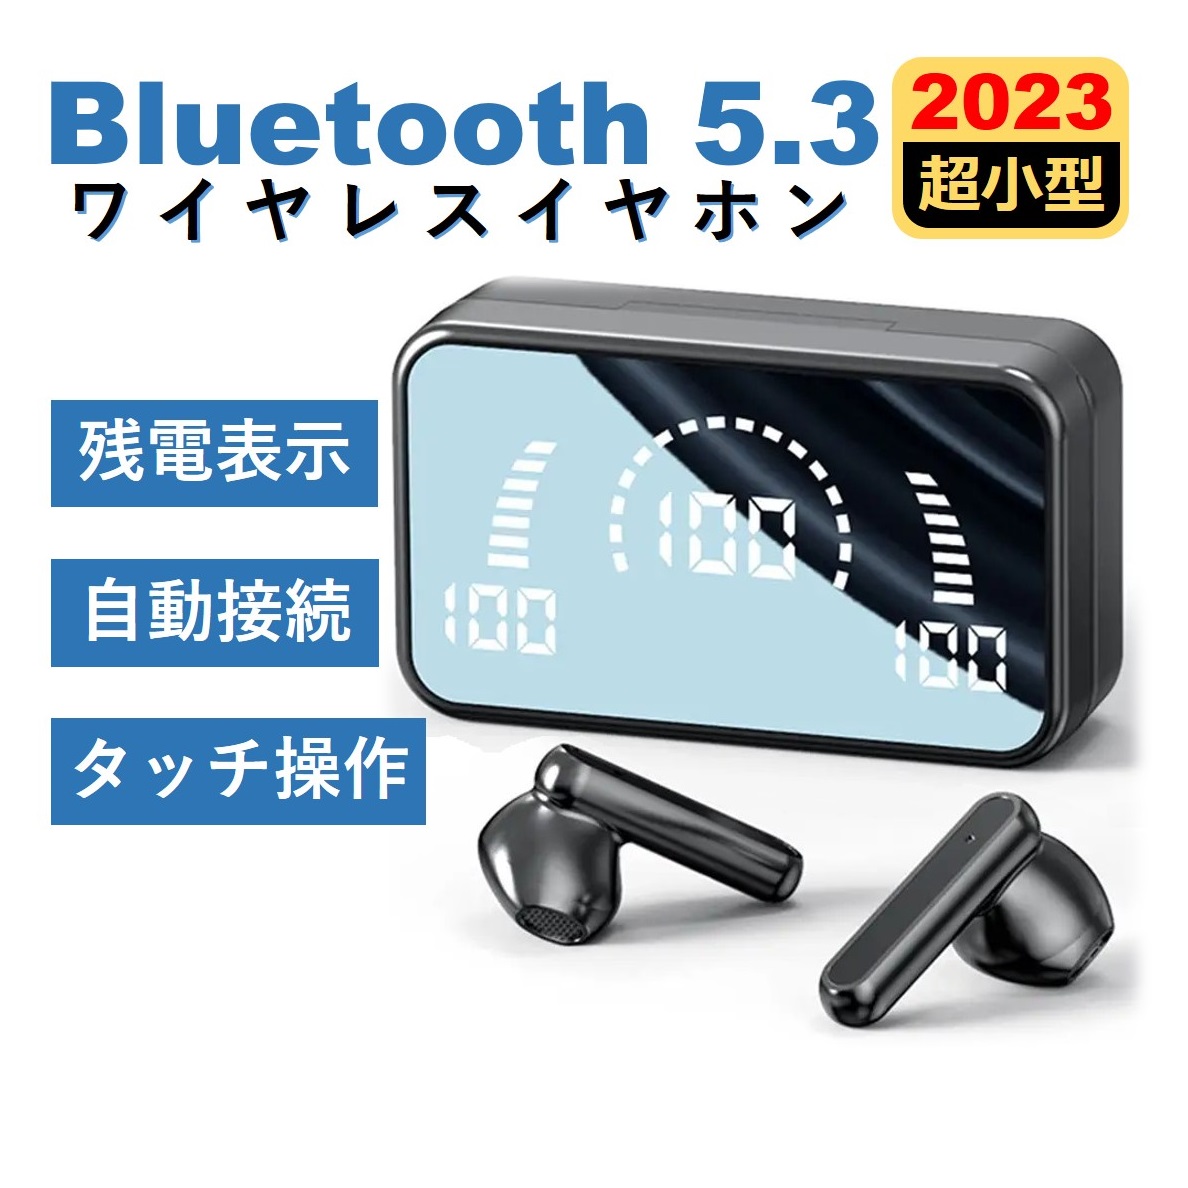 完全ワイヤレスイヤホン Bluetooth 5.3技術 LEDディスプレイ表示 ノイズキャンセリング ブルートゥース941008